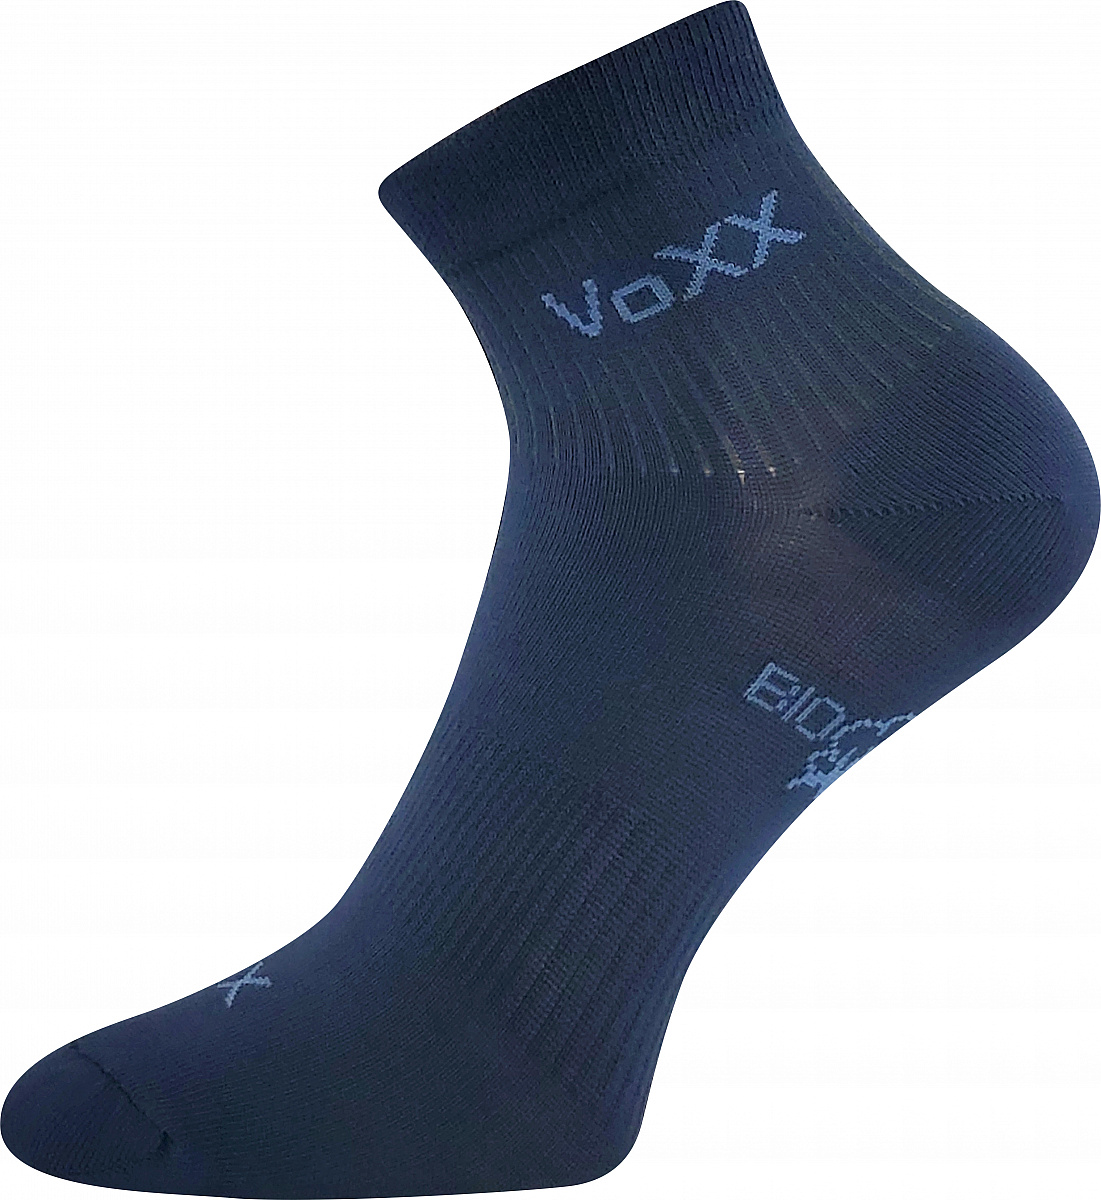 Ponožky VoXX - Boby, tmavě modrá Barva: Modrá tmavě, Velikost: 35-38